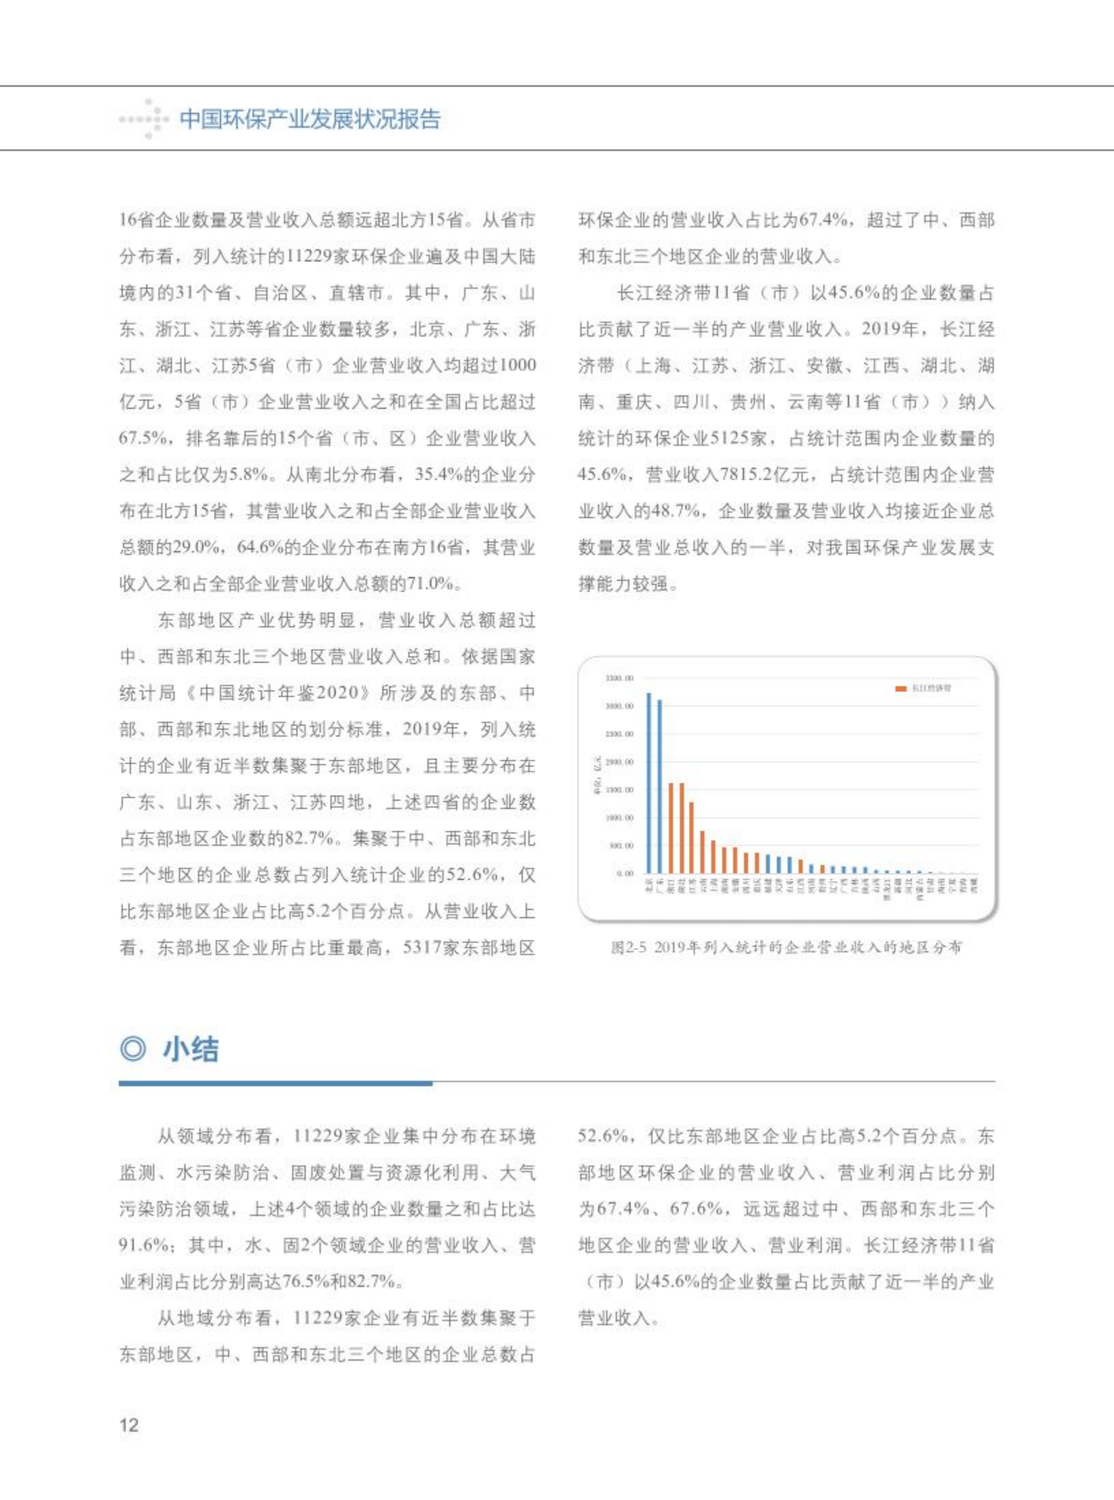 【2020】中国环保产业发展状况报告_13.png